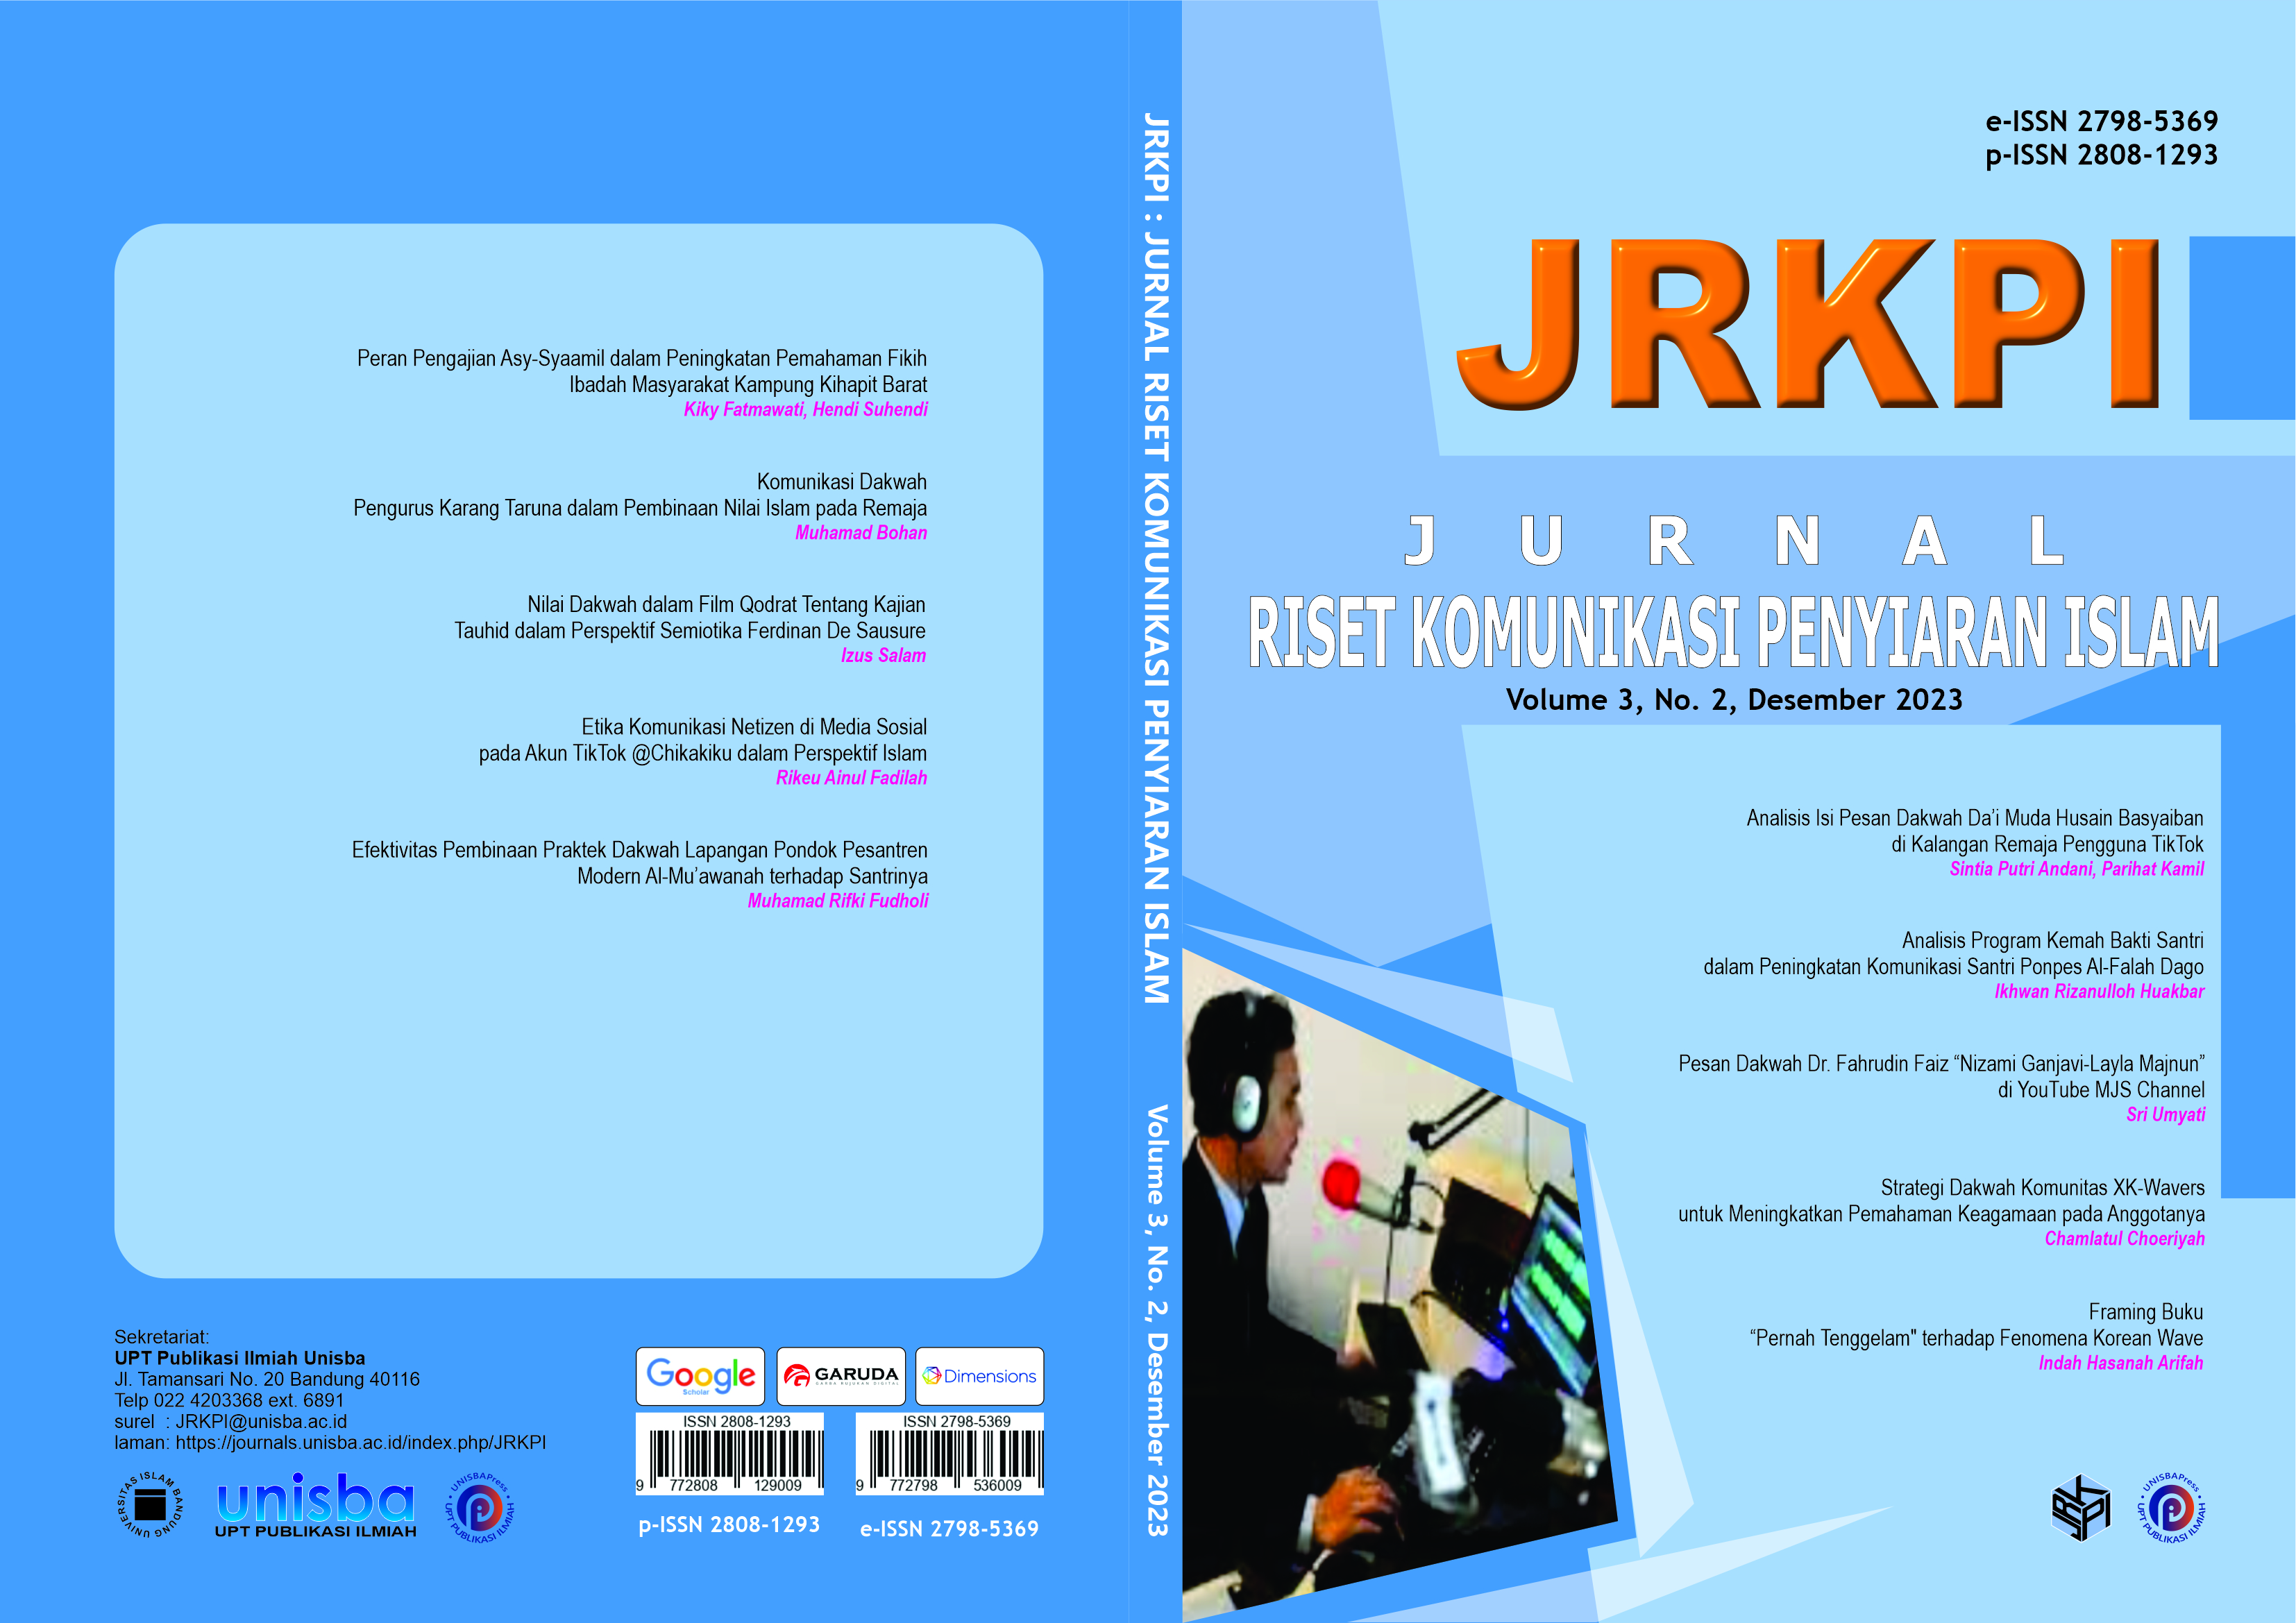 					View Volume 3, No.2, Desember 2023, Jurnal Riset Komunikasi Penyiaran Islam (JRKPI)
				